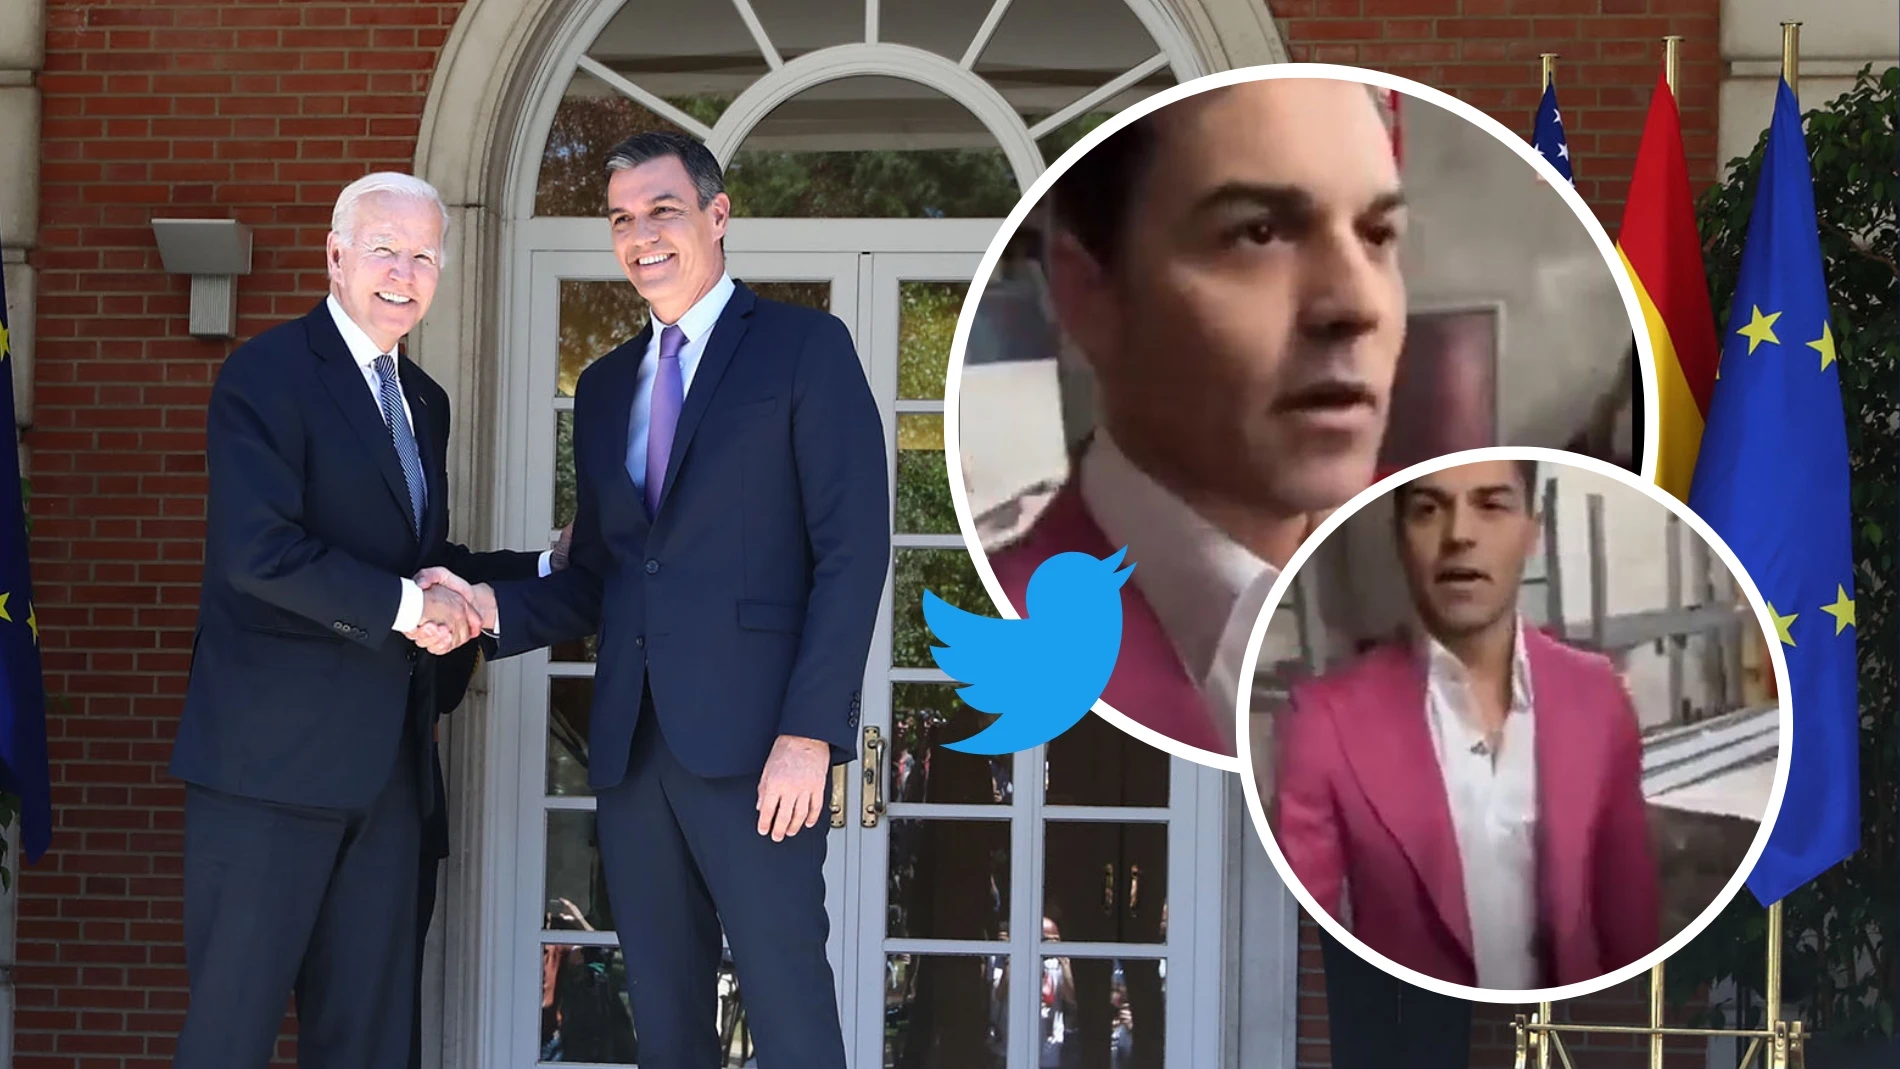 La original petición popular de Twitter a Pedro Sánchez en su visita a la Casa Blanca 